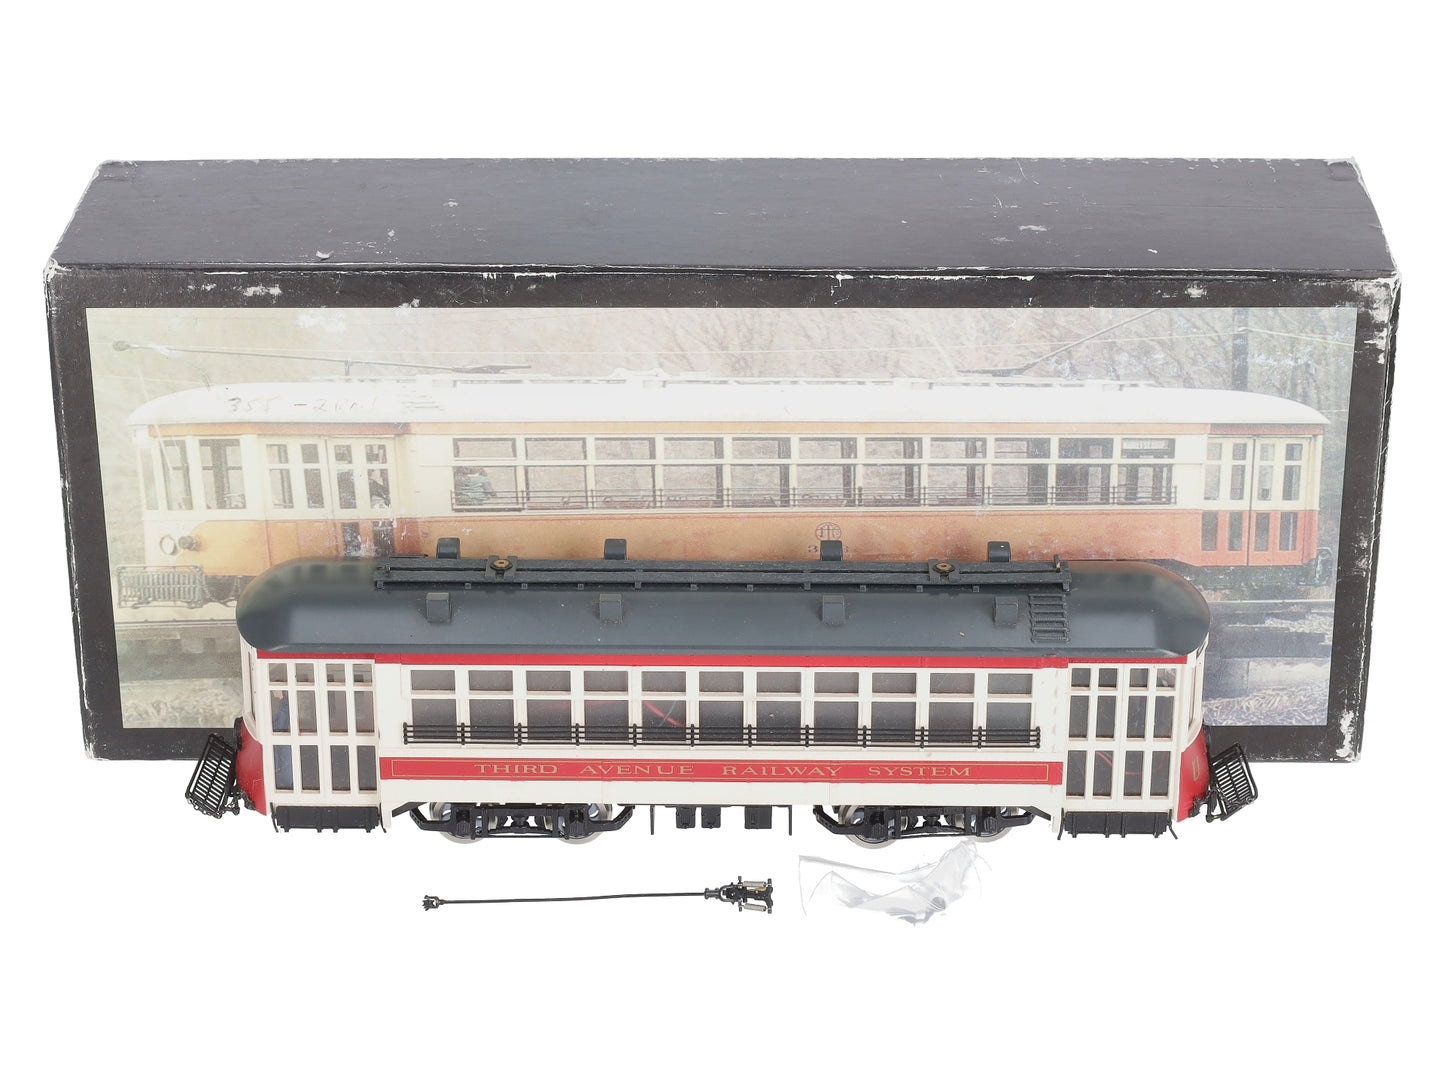 Western Hobbycraft O Scale Third Avenue Railway System Trolley (2-Rail) EX/Box